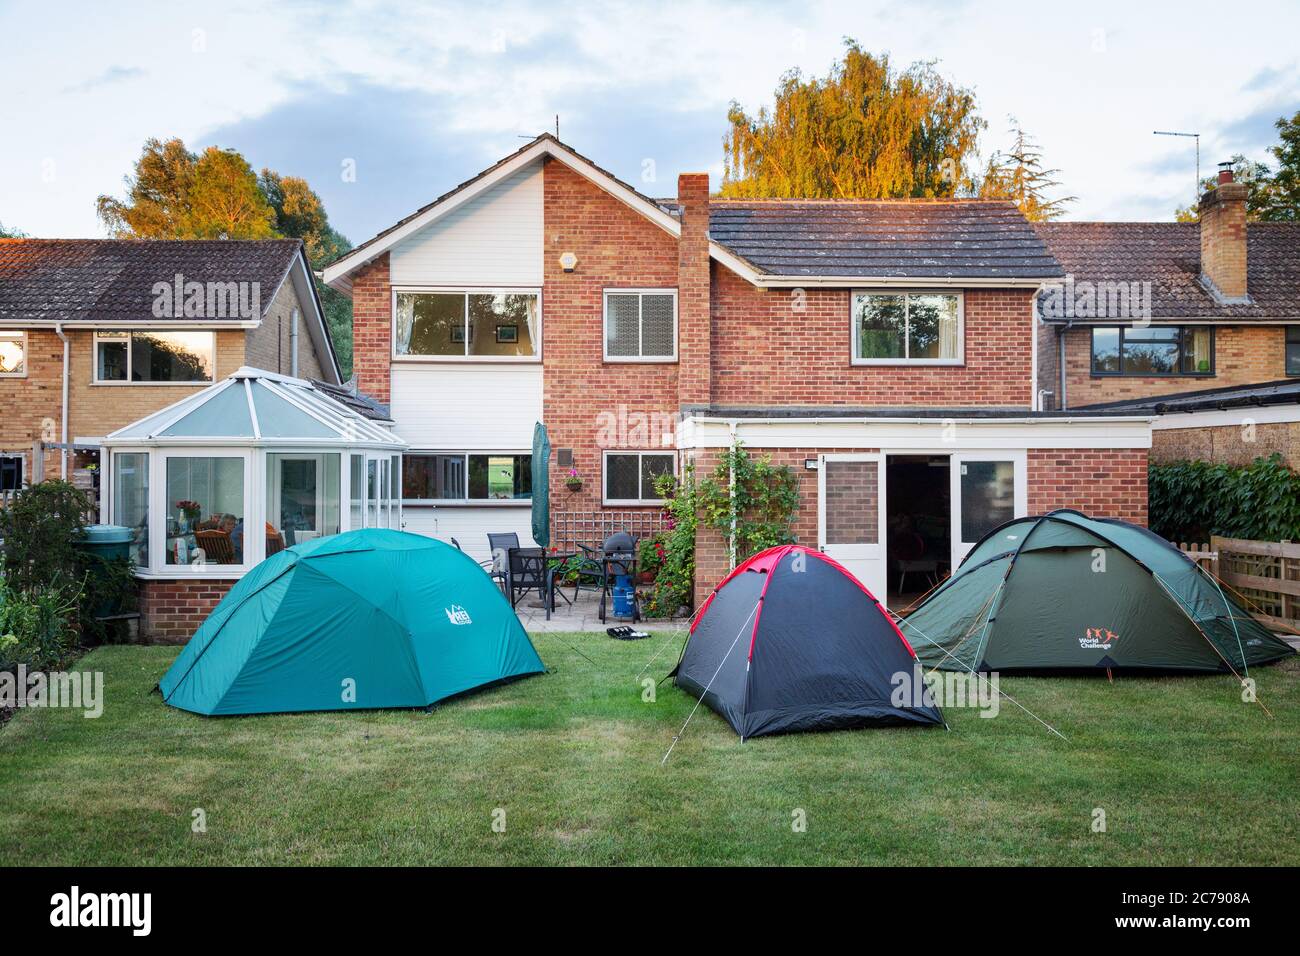 Social distancer le Royaume-Uni pendant la pandémie Covid 19 - famille rendant visite aux parents mais restant dans des tentes dans le jardin, Oxfordshire Royaume-Uni Banque D'Images